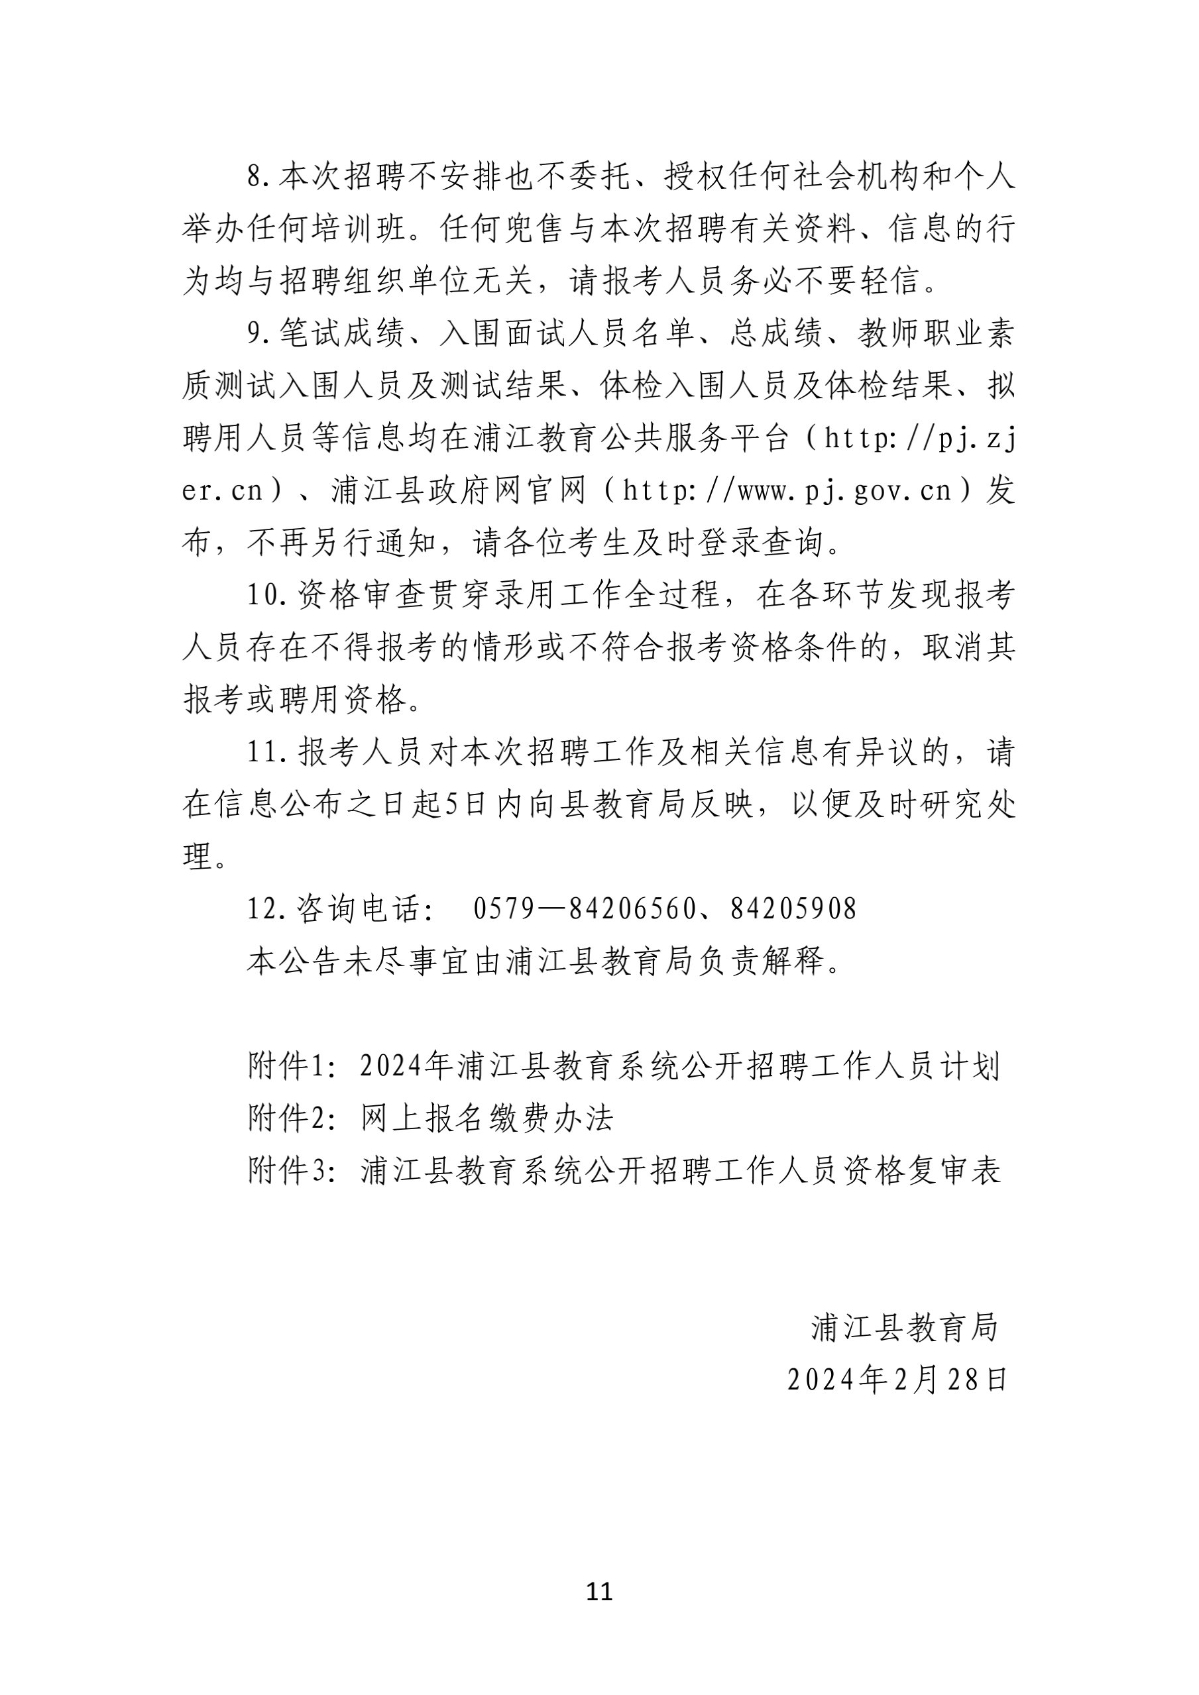 2024年浦江县教育系统公开招聘工作人员公告(1)_11.jpg